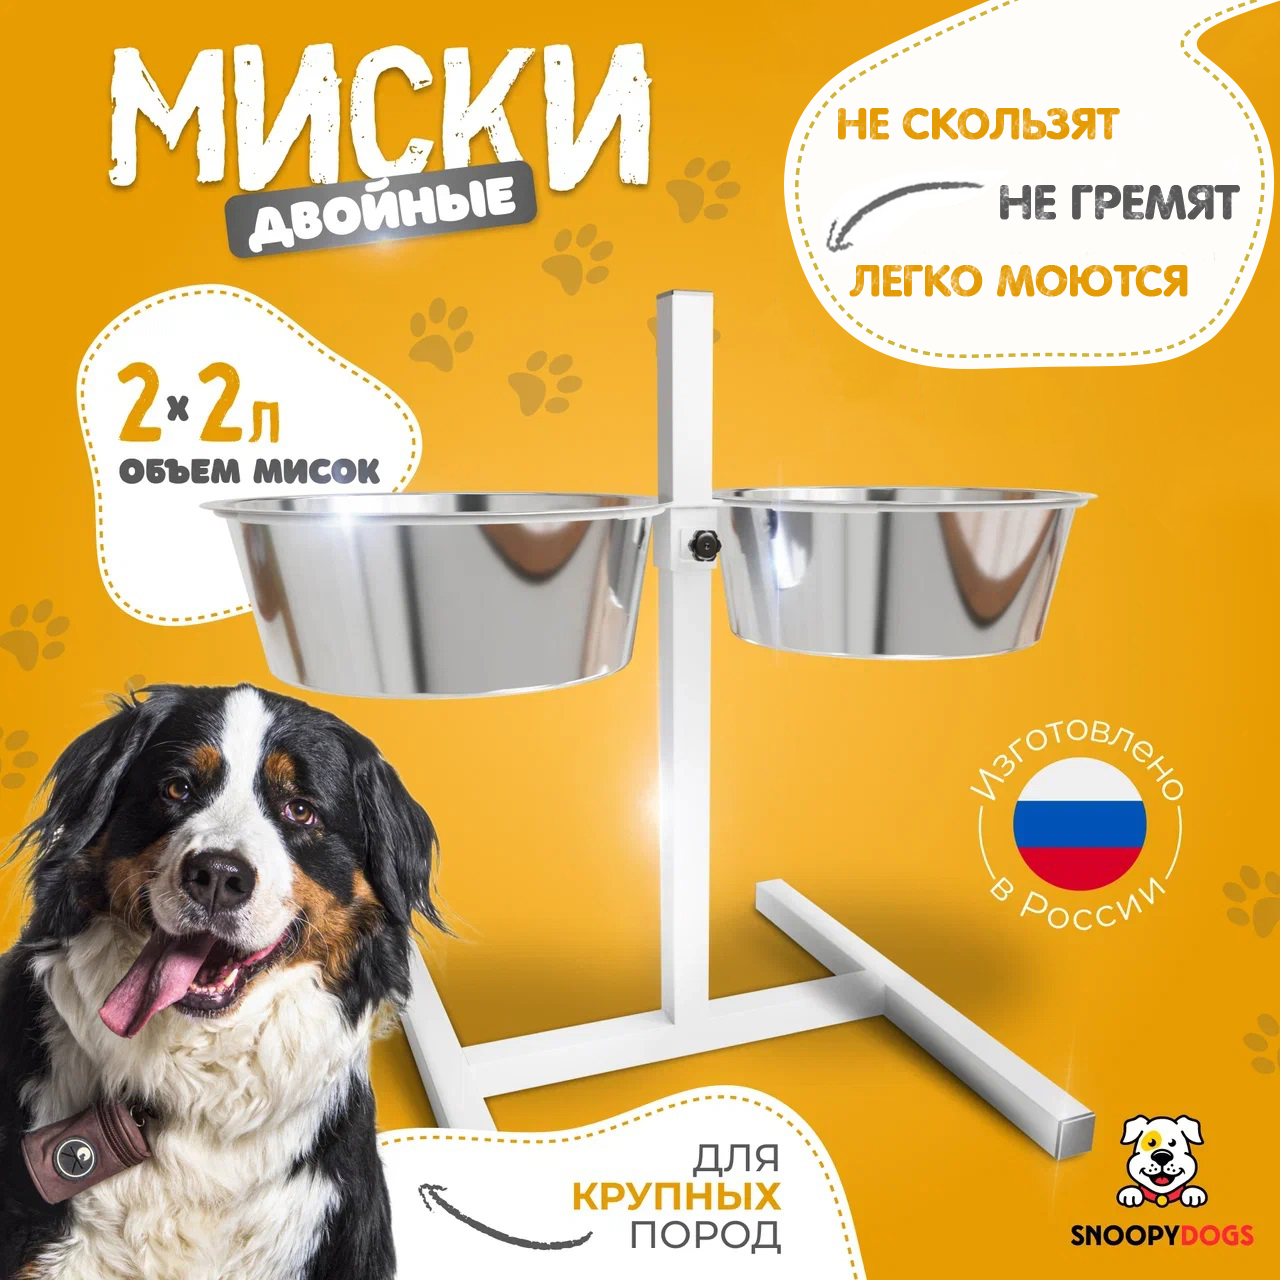 Миски для собак Snoopy Dogs на подставке, двойные, белые, нержавеющая сталь, 2 шт по 2 л